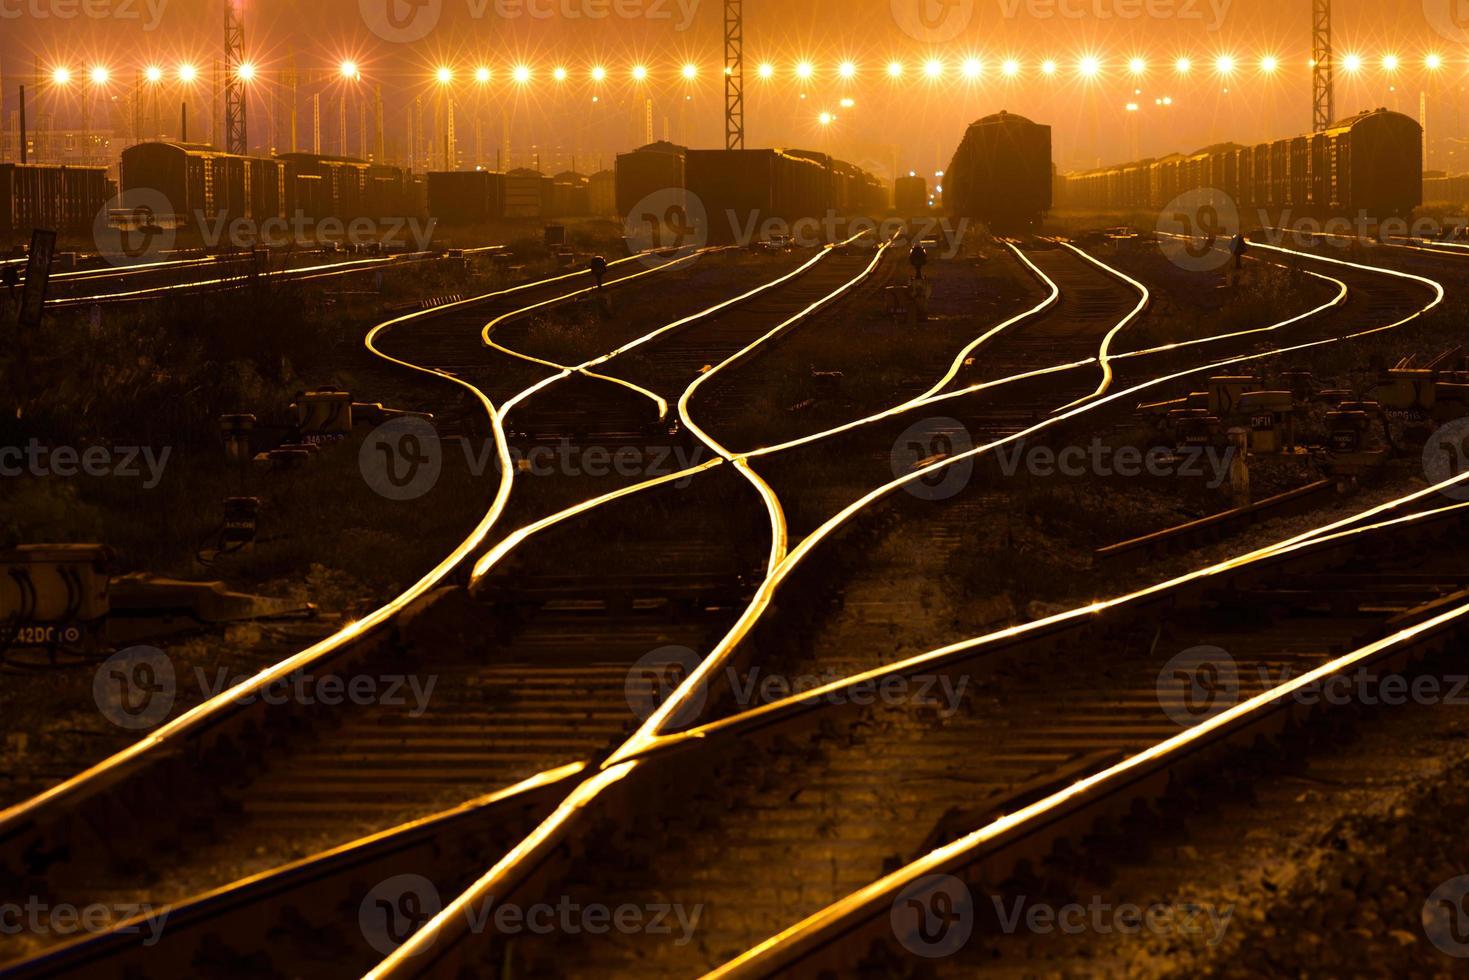 The way forward railway photo